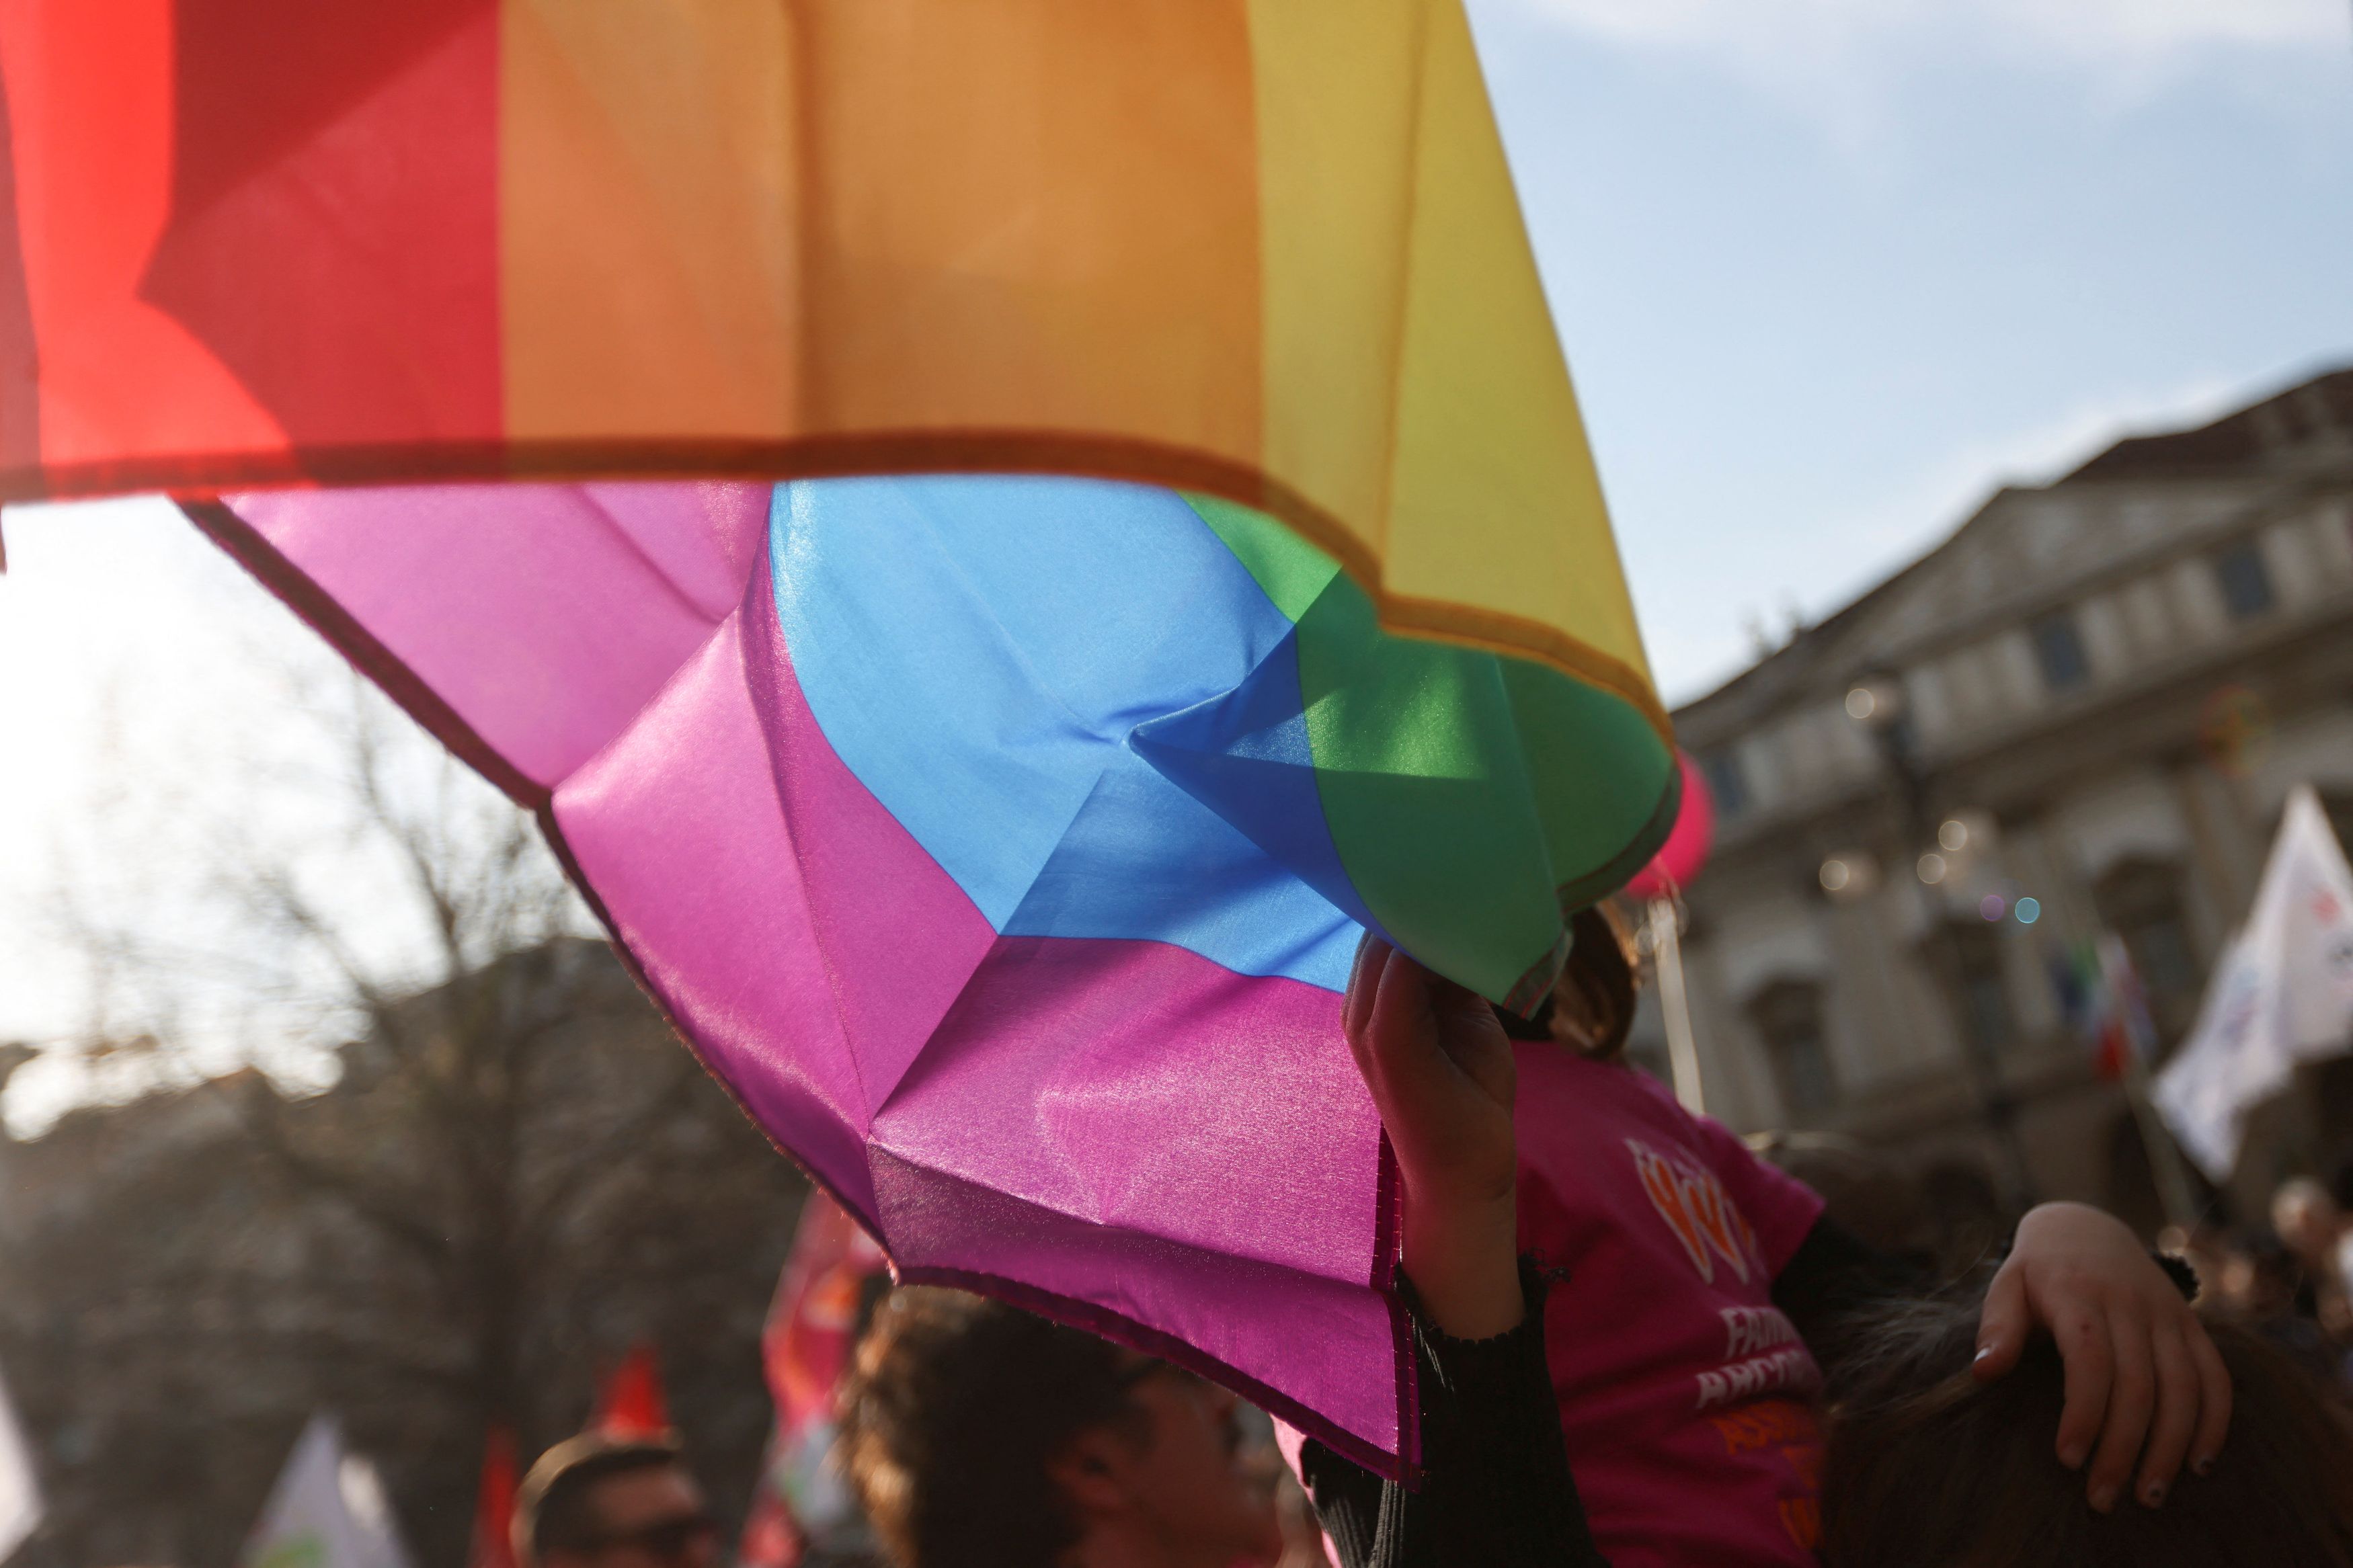 Οι περισσότεροι τρανς άνθρωποι στις ΗΠΑ θεωρούν τη φυλομετάβαση θετική